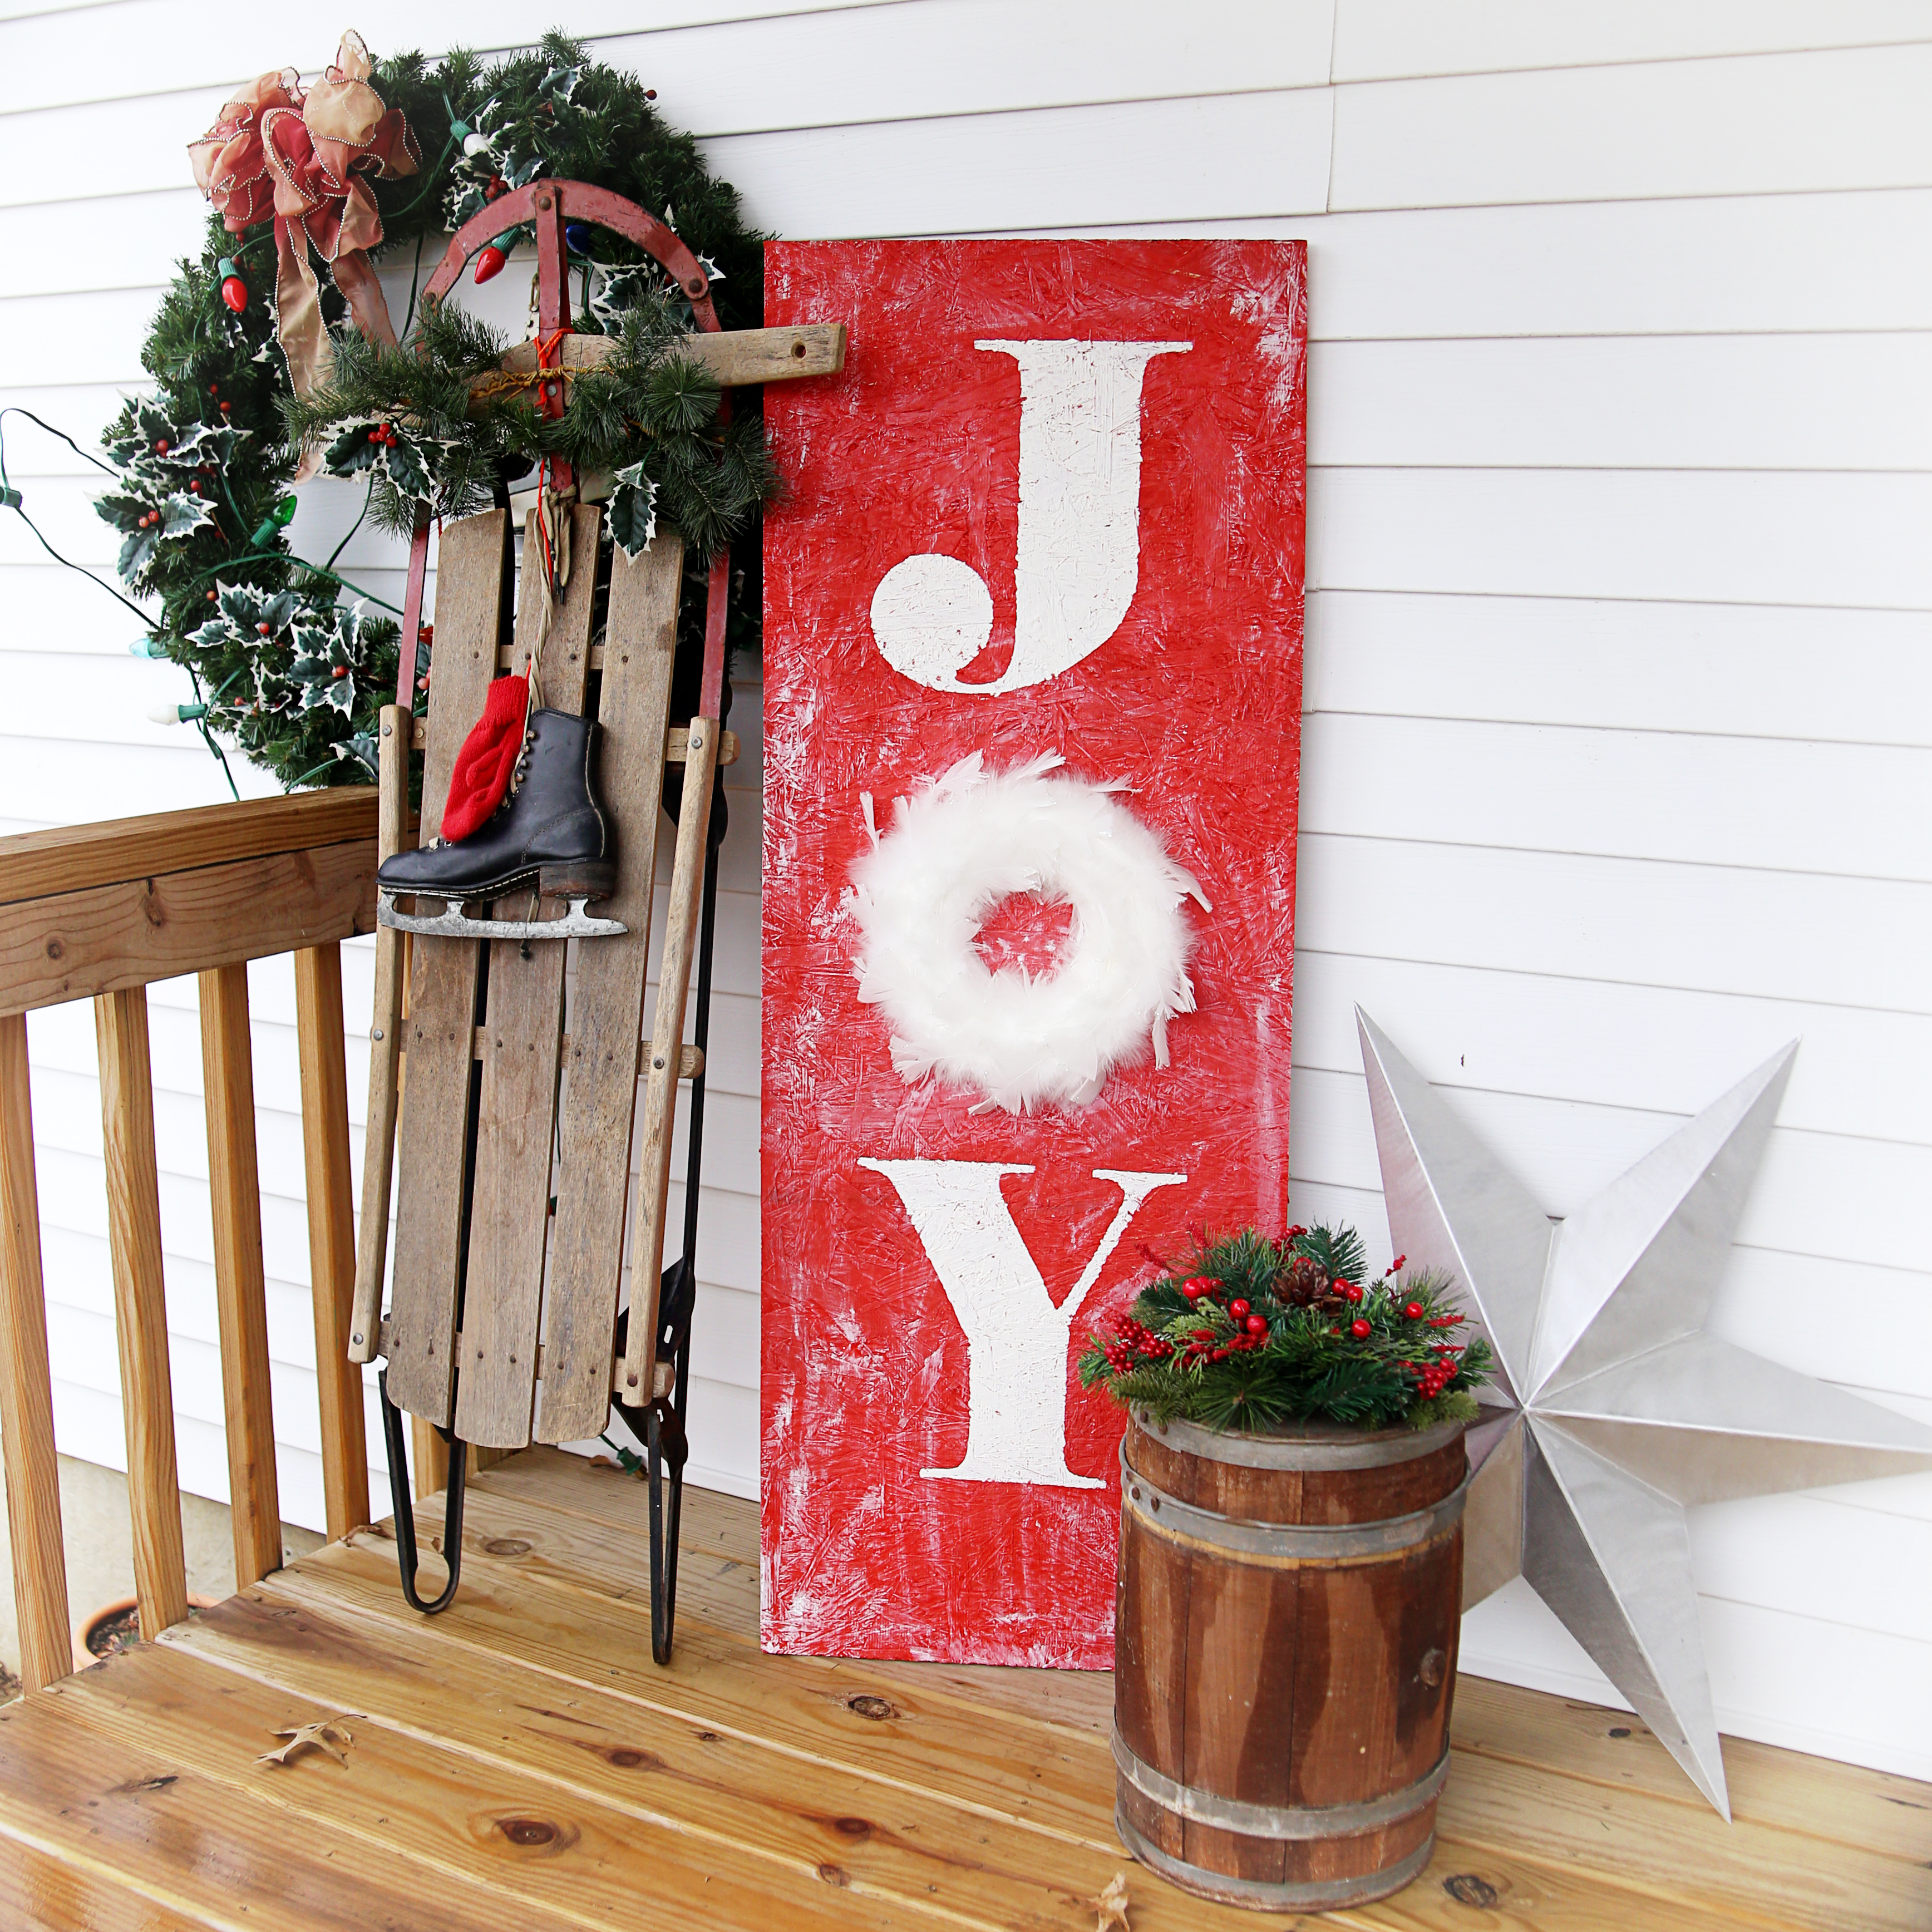 Joy Santa Claus Christmas wreath sign Christmas wreath sign